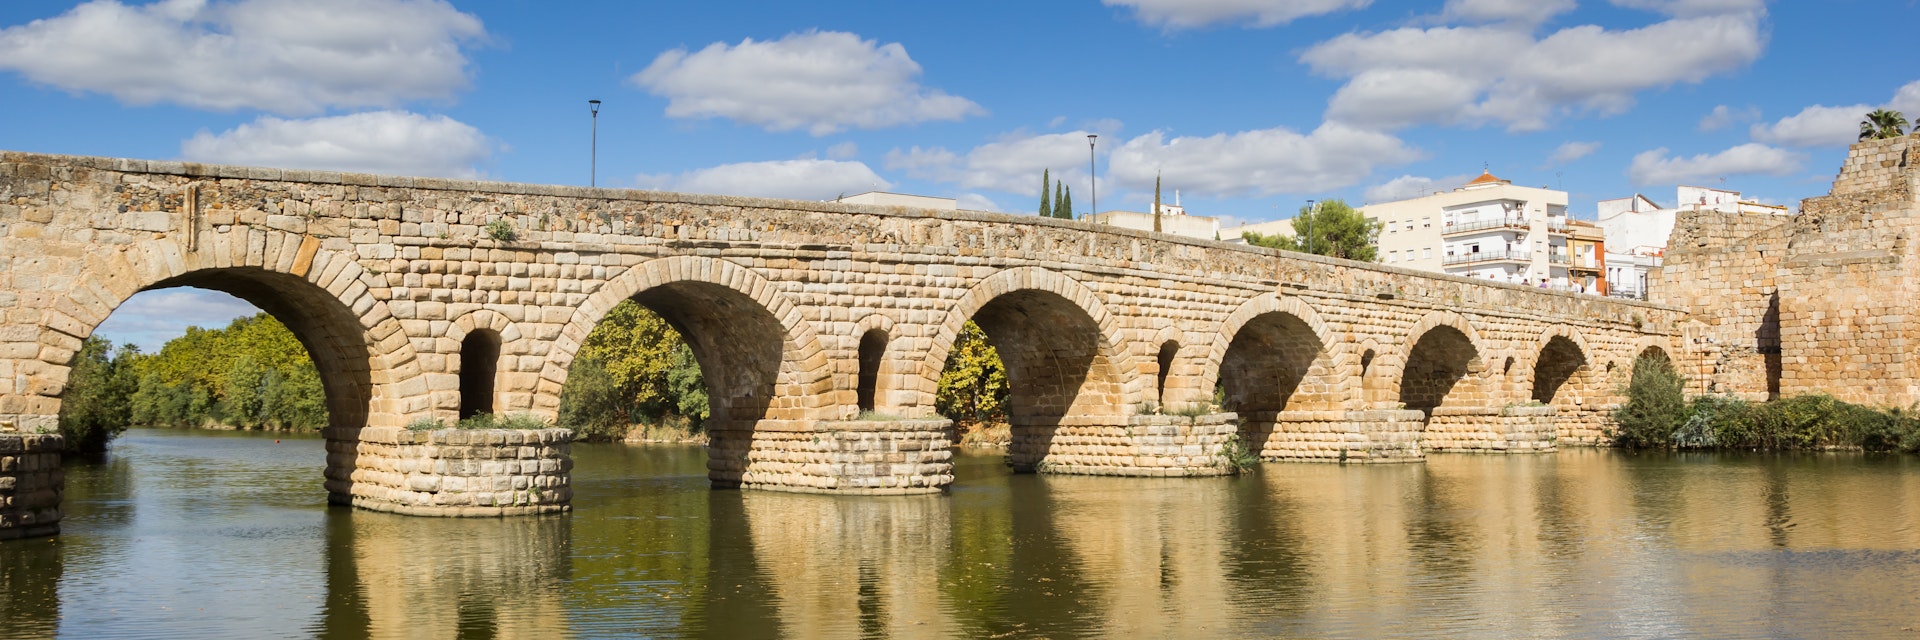 The historic roman bridge Puente Romana over the Guadiana river in Merida, Spain.